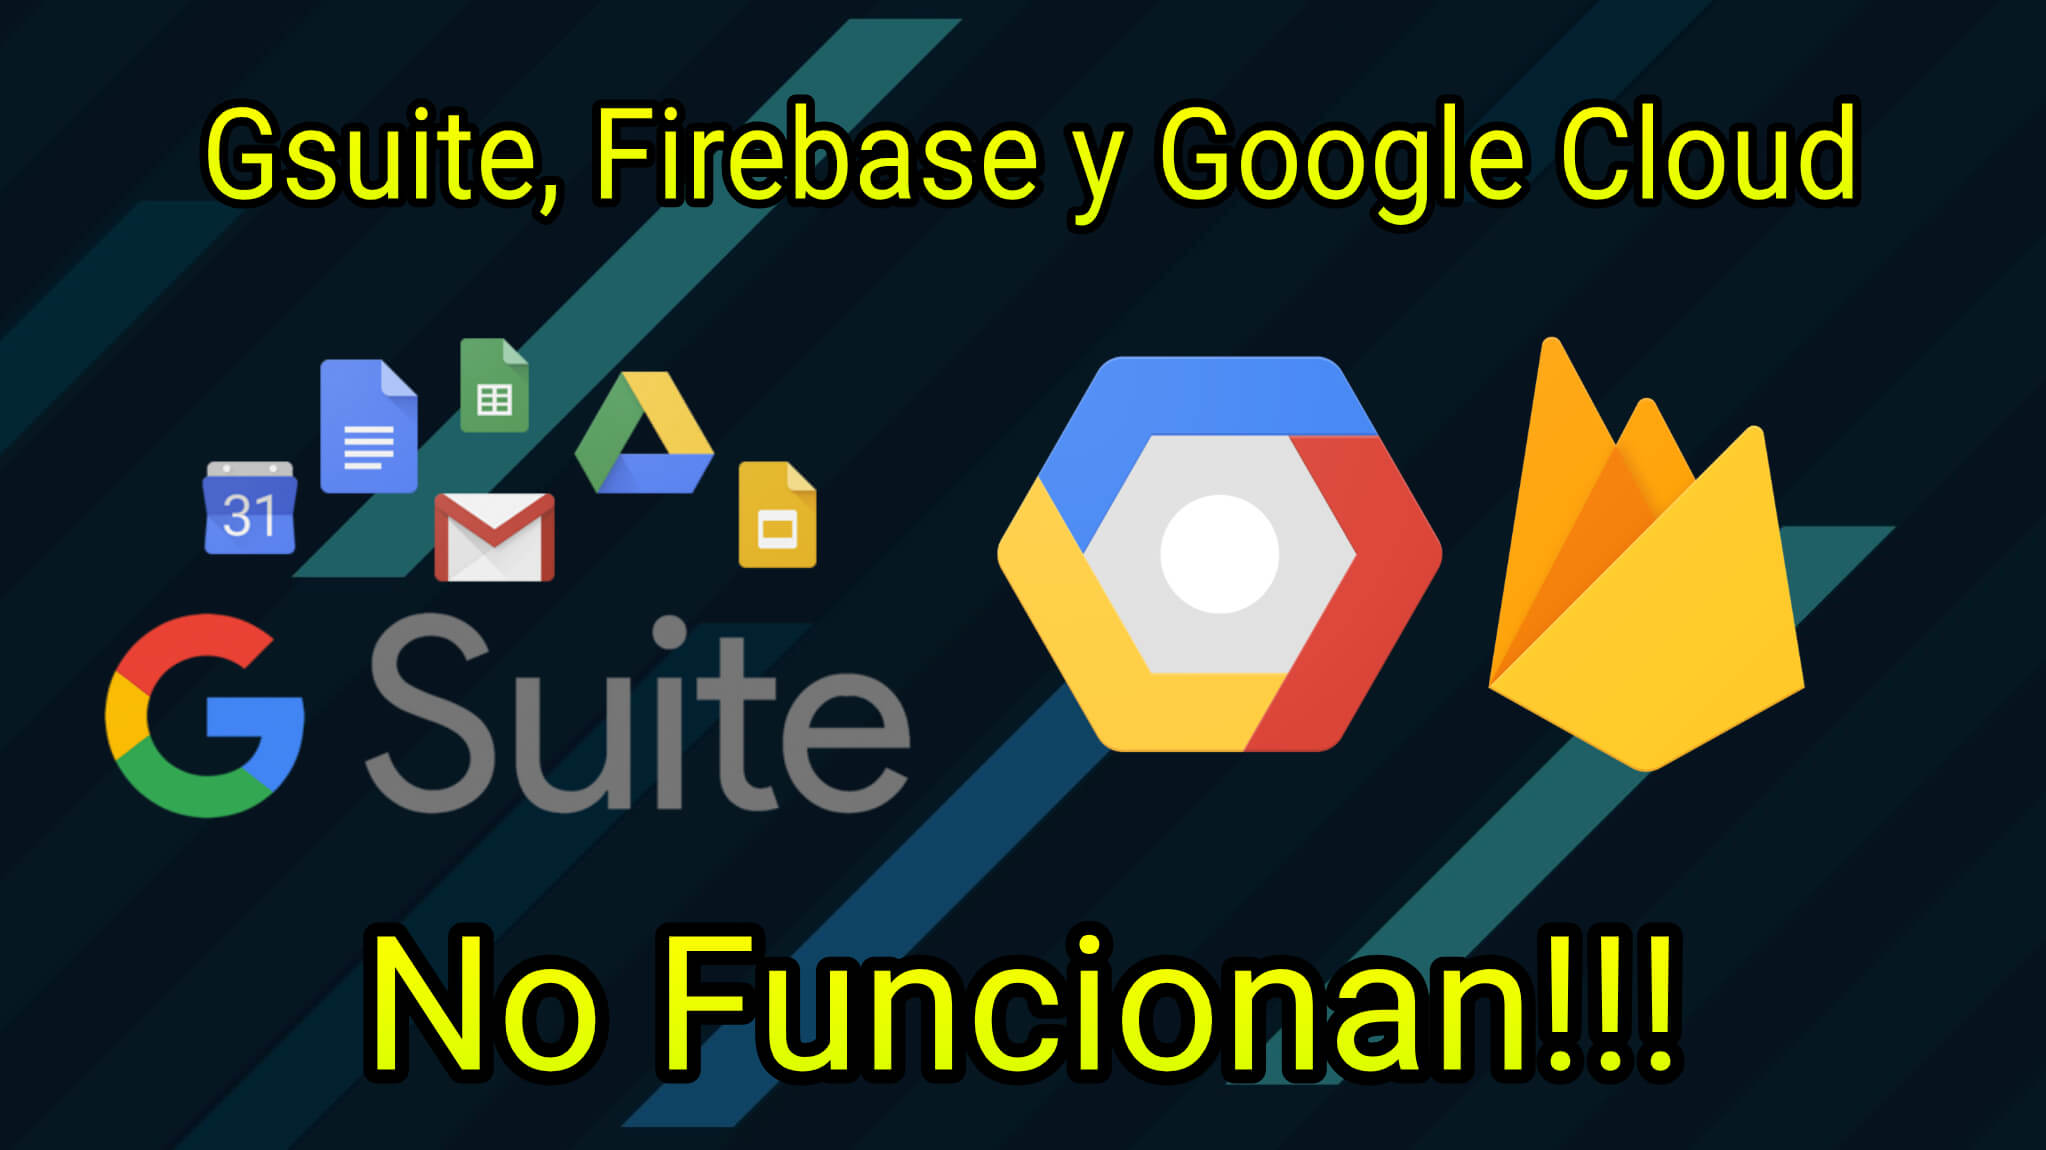 Google Cloud, Firebase y Gsuite están sufriendo problemas